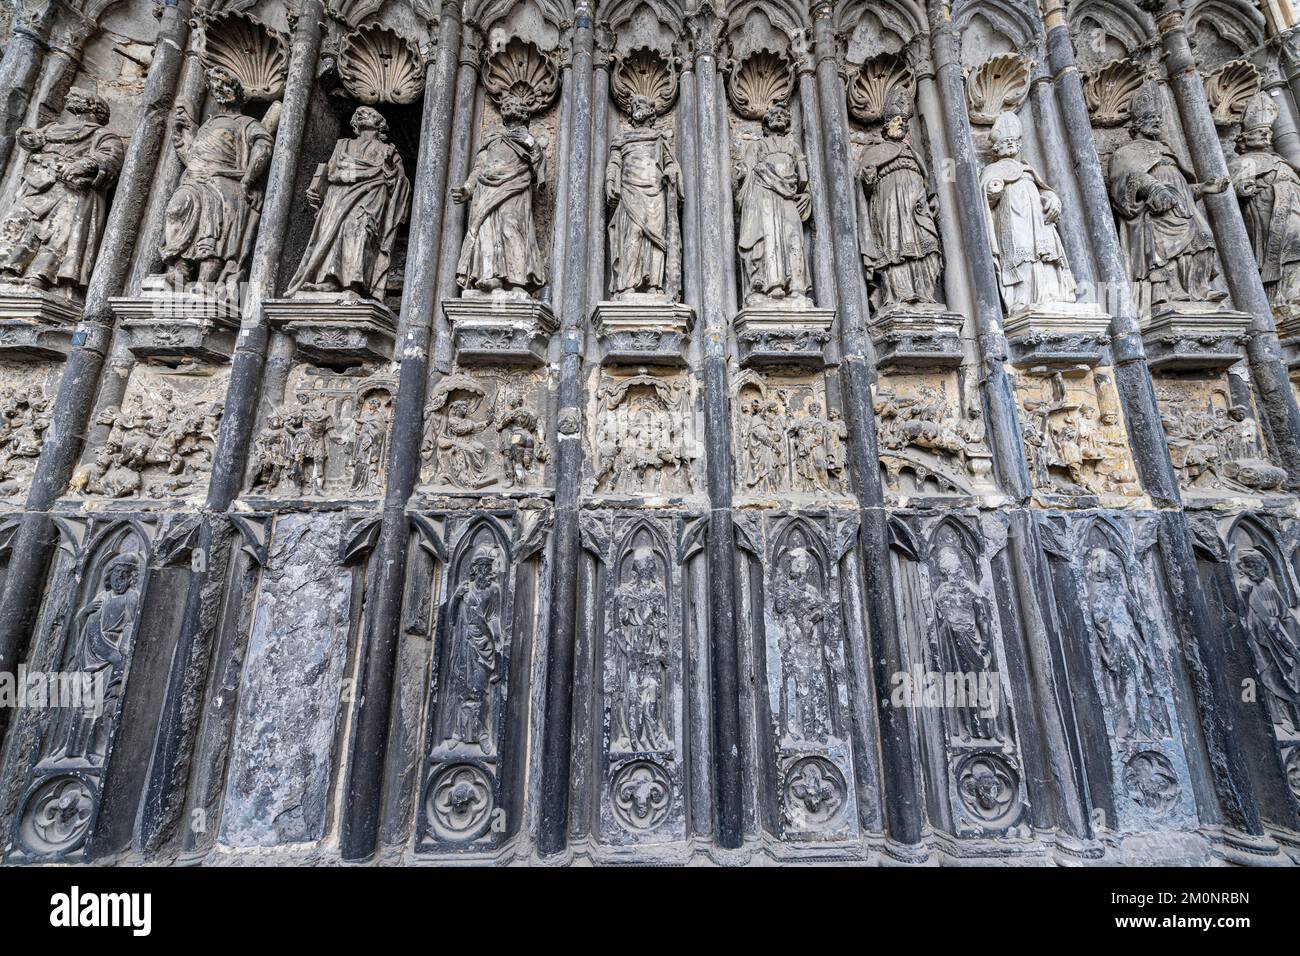 Religious reliefs, Unesco world heritage site Tournai Cathedral, Belgium, Europe Stock Photo